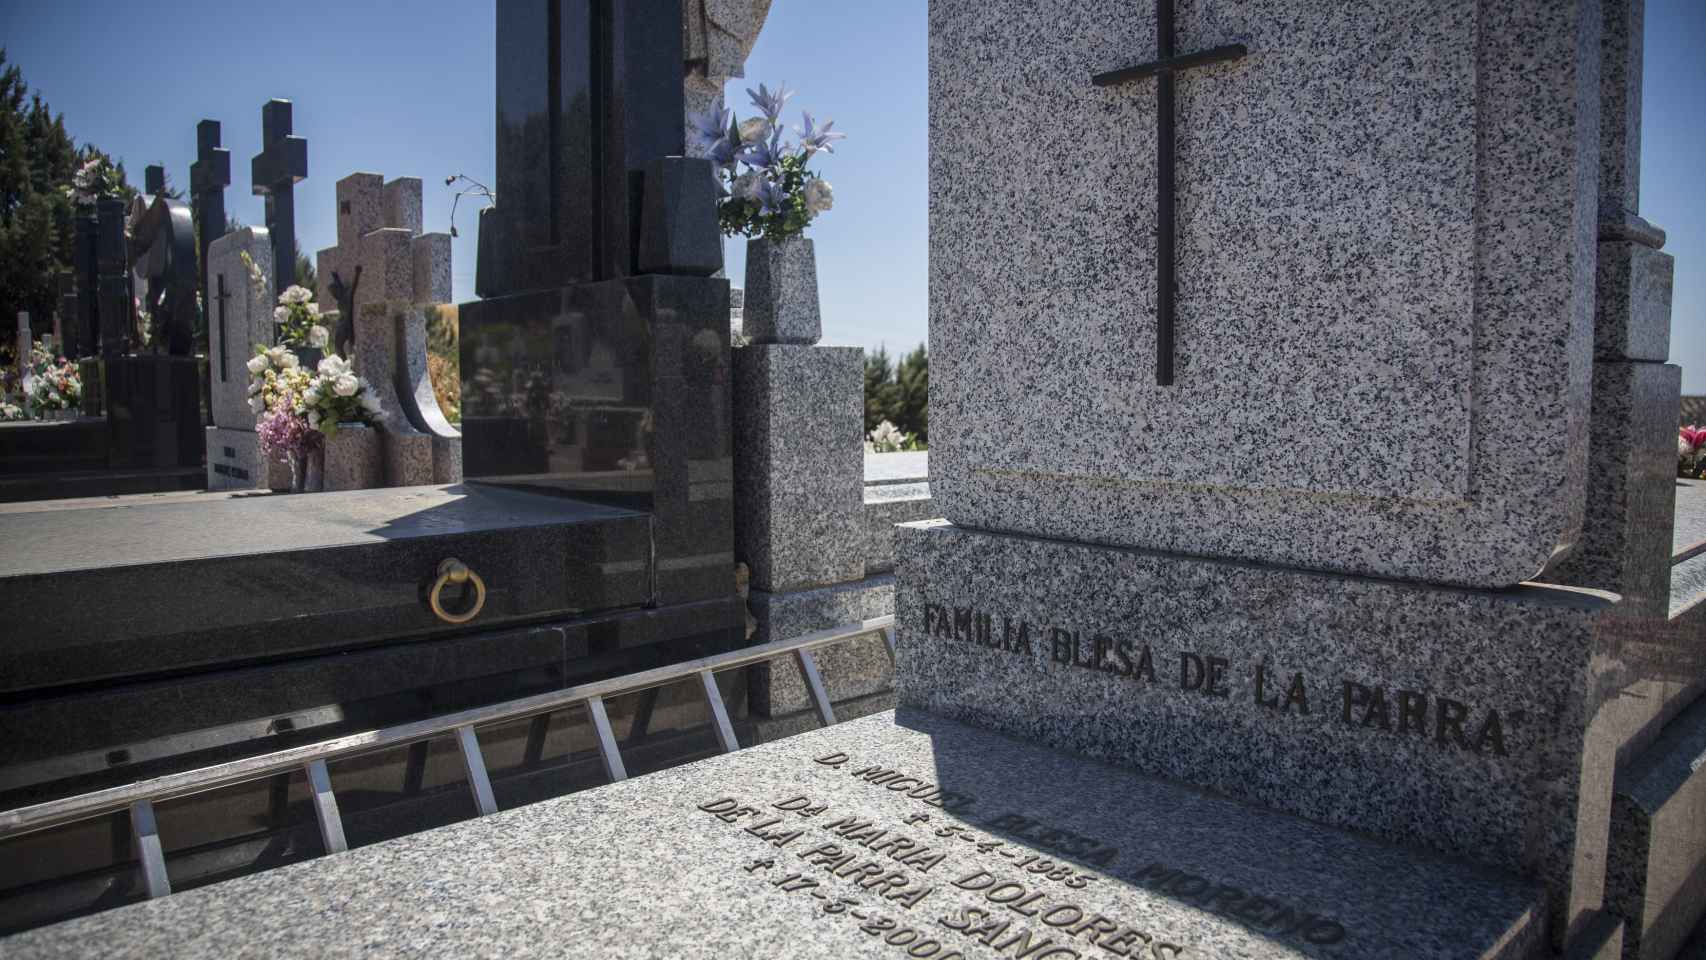 Panteón familiar de los Blesa de la Parra en el cementerio de Linares con los restos mortales de los padres del exbanquero Miguel Blesa aparecido muerto el pasado día 19 de Julio en una finca de Córdoba.